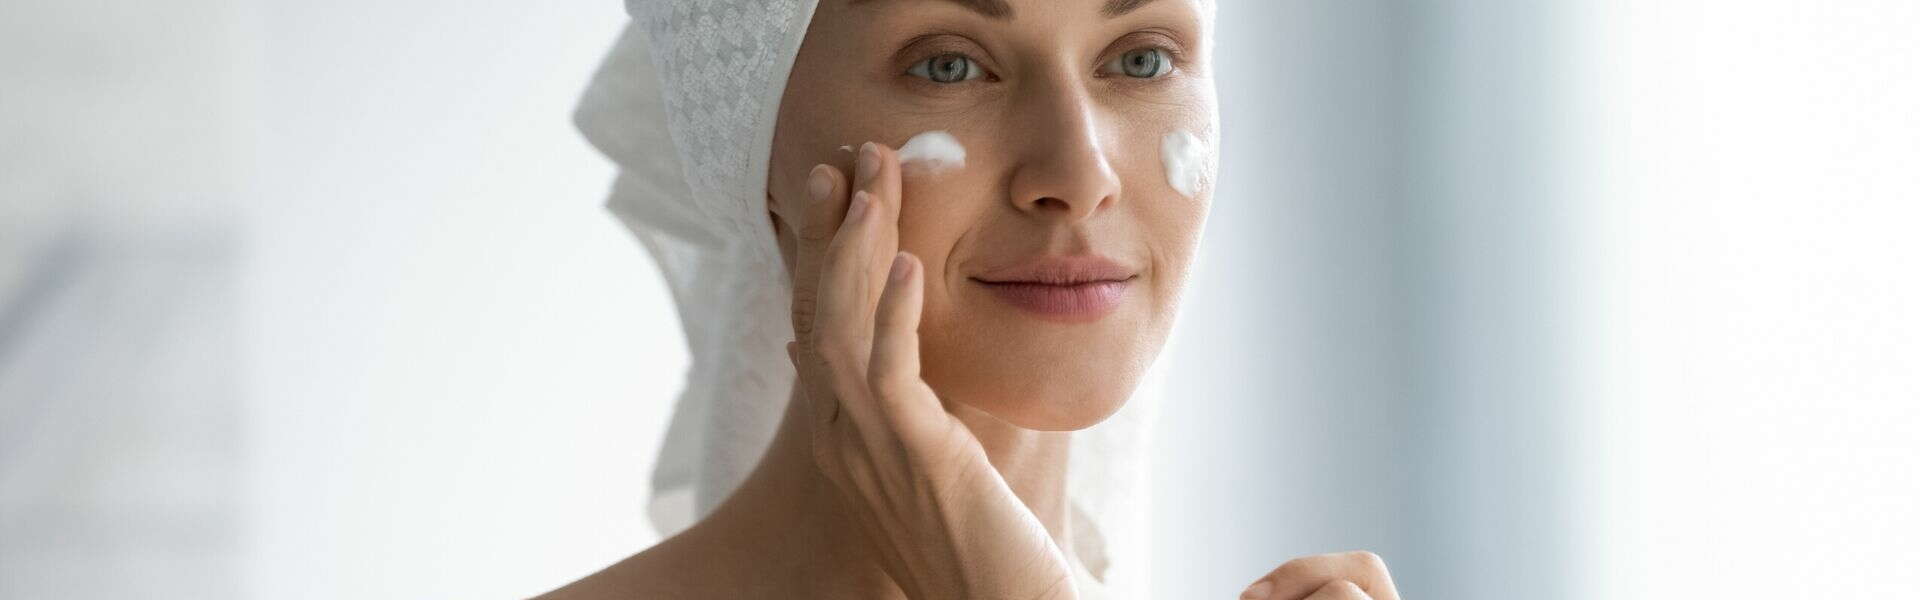 Envejecimiento de la Piel | Ingredientes activos que ayudan a mantener la piel joven